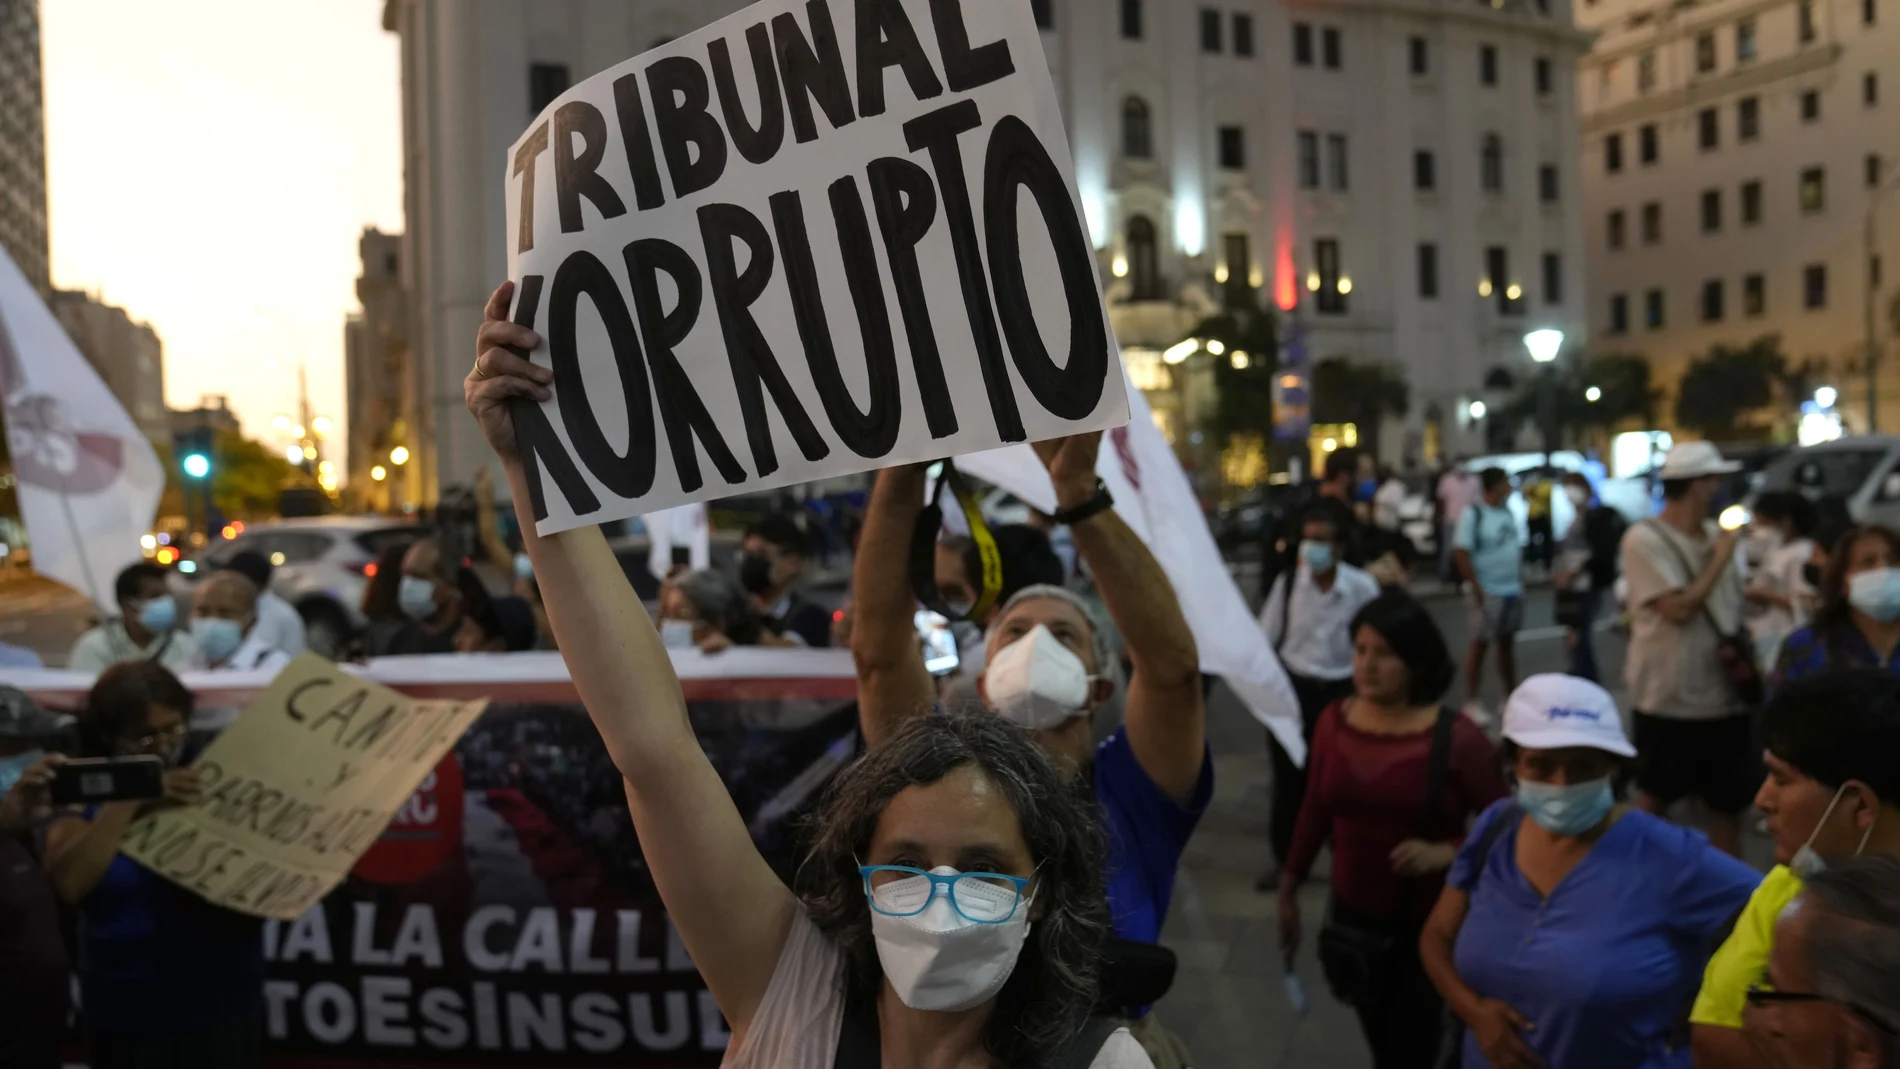 Una mujer sostiene un cartel que dice en español "Tribunal corrupto", mientras los manifestantes protestan contra la decisión de la Corte Constitucional de Perú que aprobó la liberación de prisión del expresidente Alberto Fujimori en Lima, Perú, el jueves 17 de marzo de 2022.